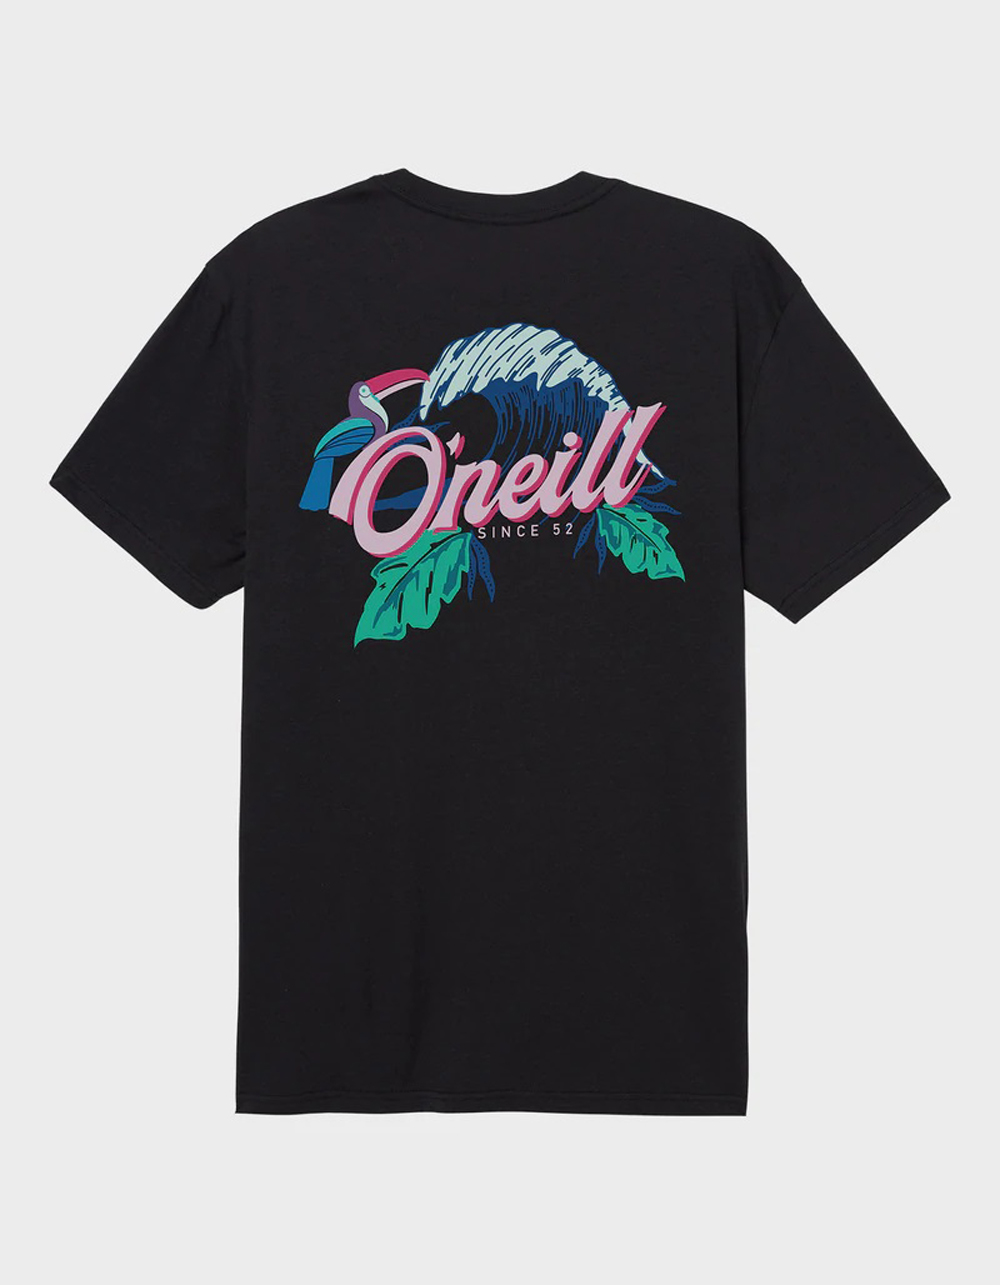 O'Neill Clothing, Swim & More | Tillys